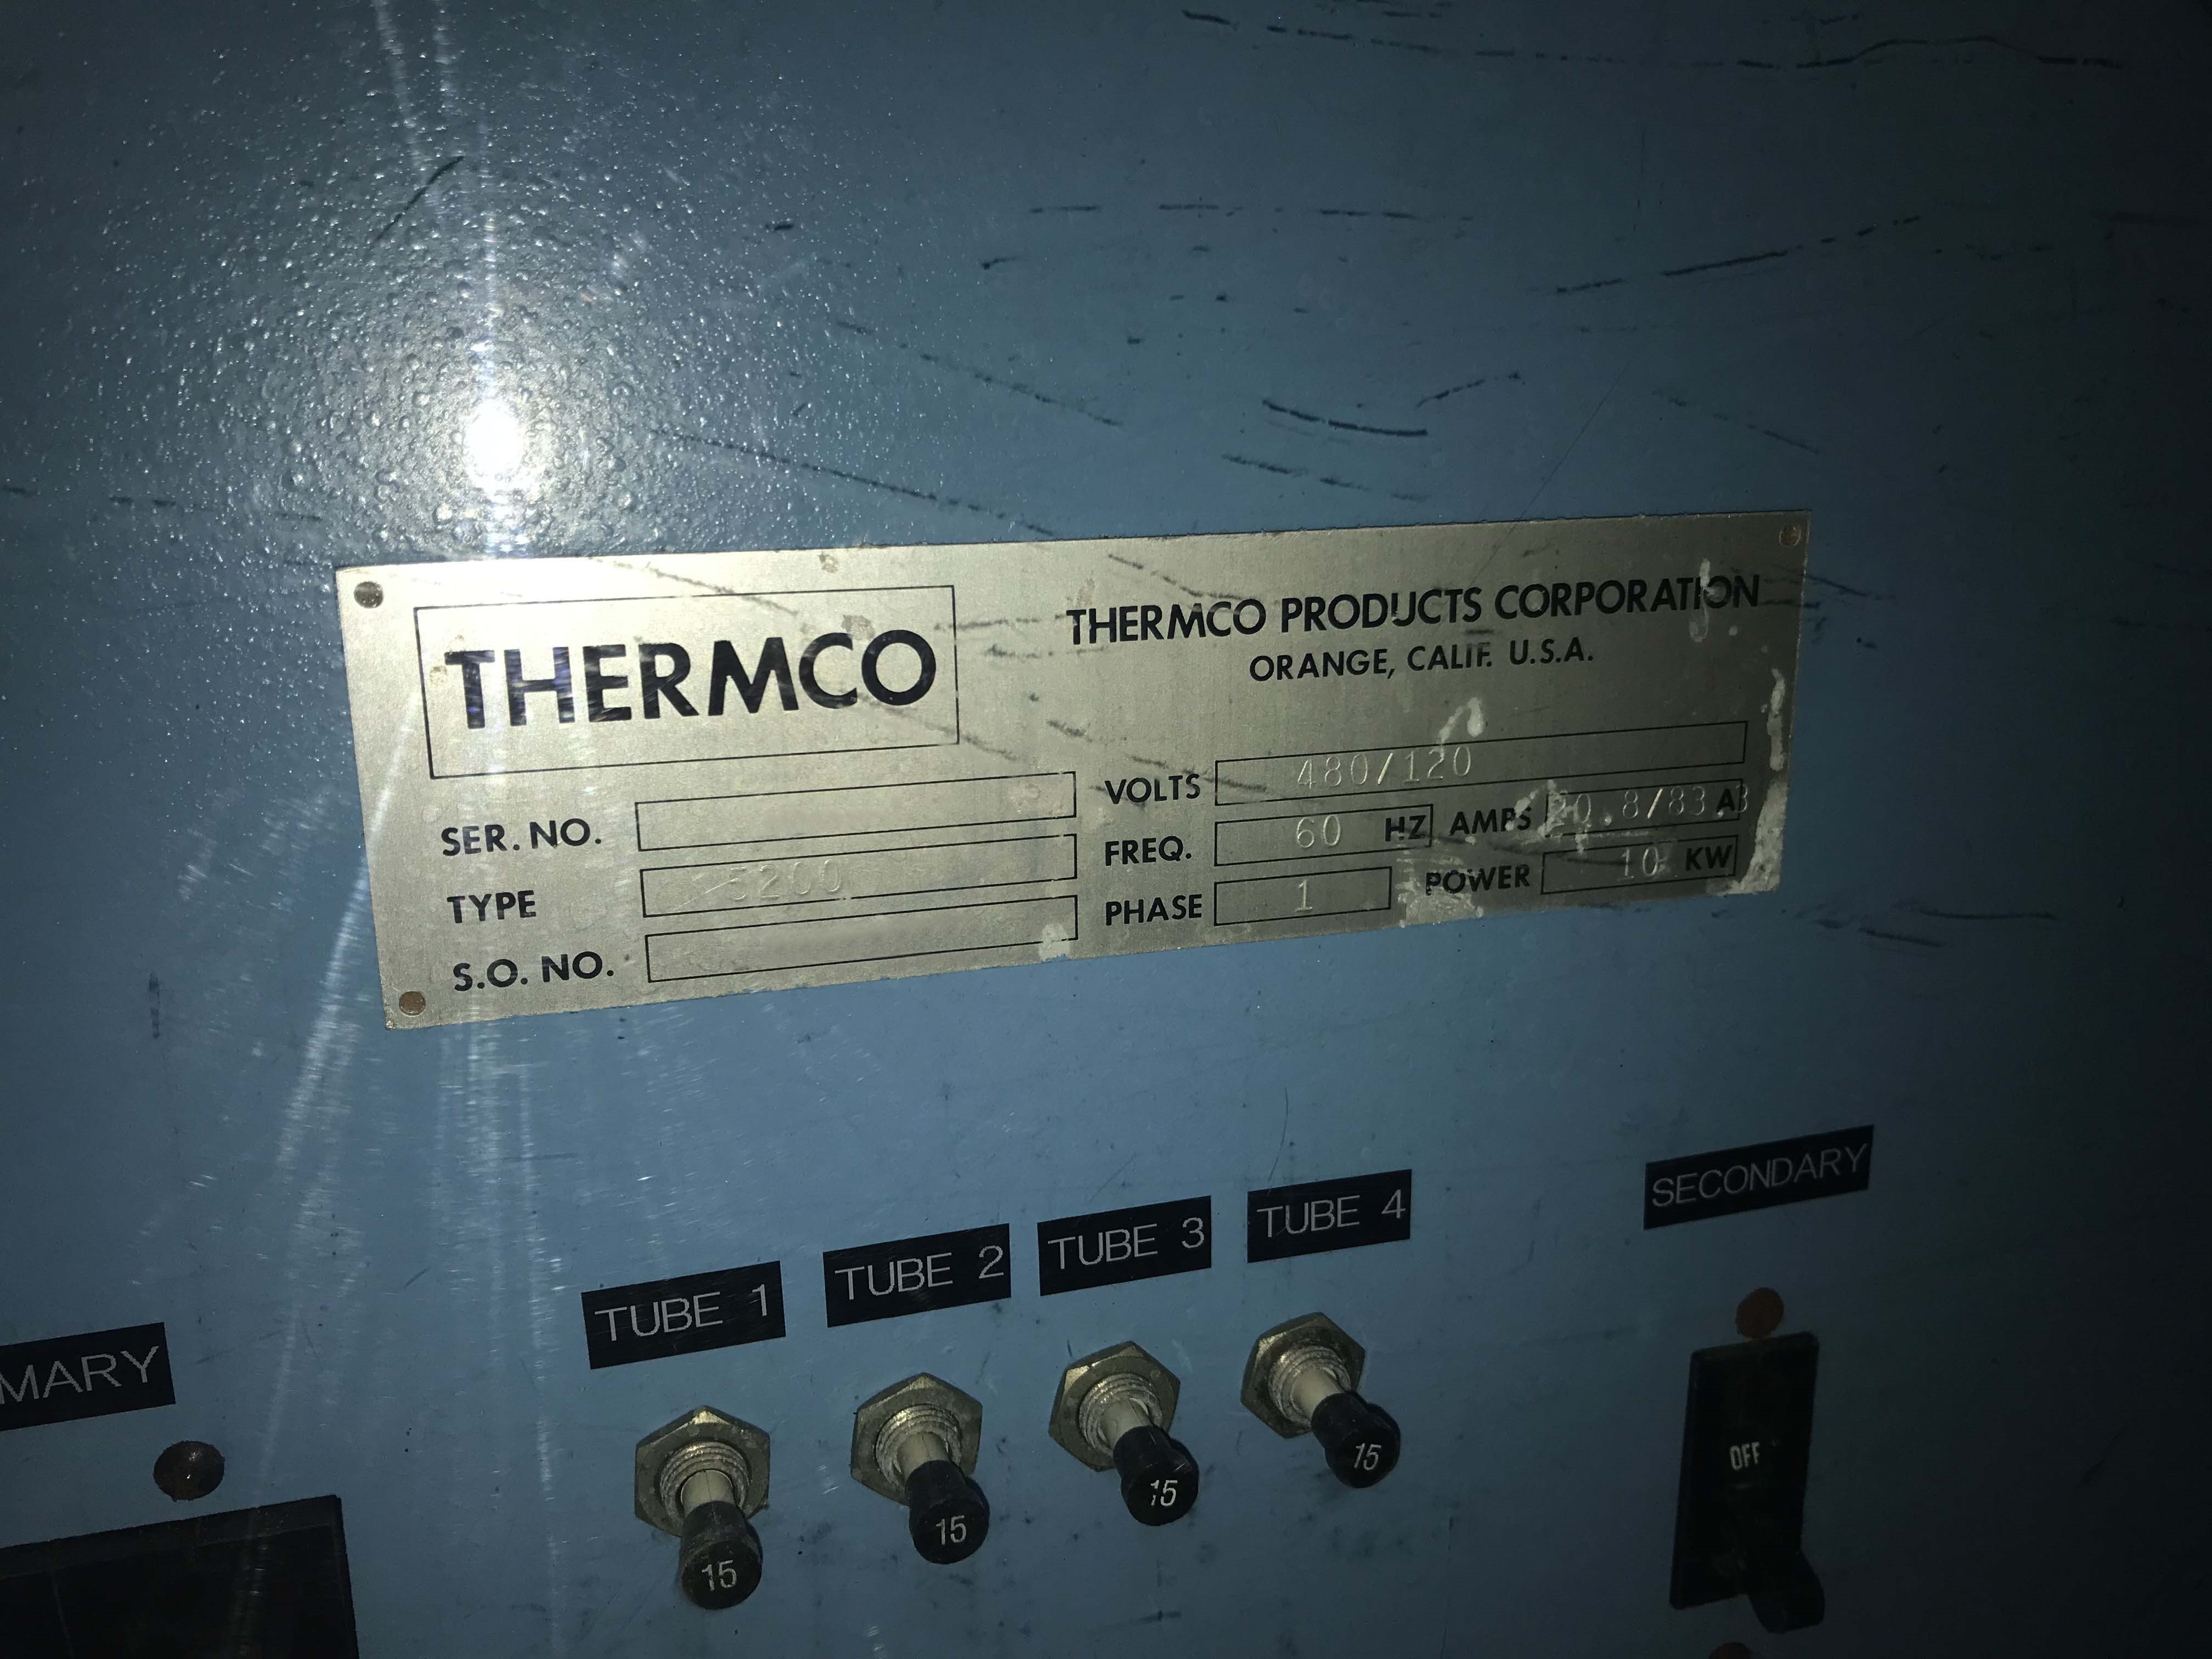 图为 已使用的 THERMCO 5204 待售